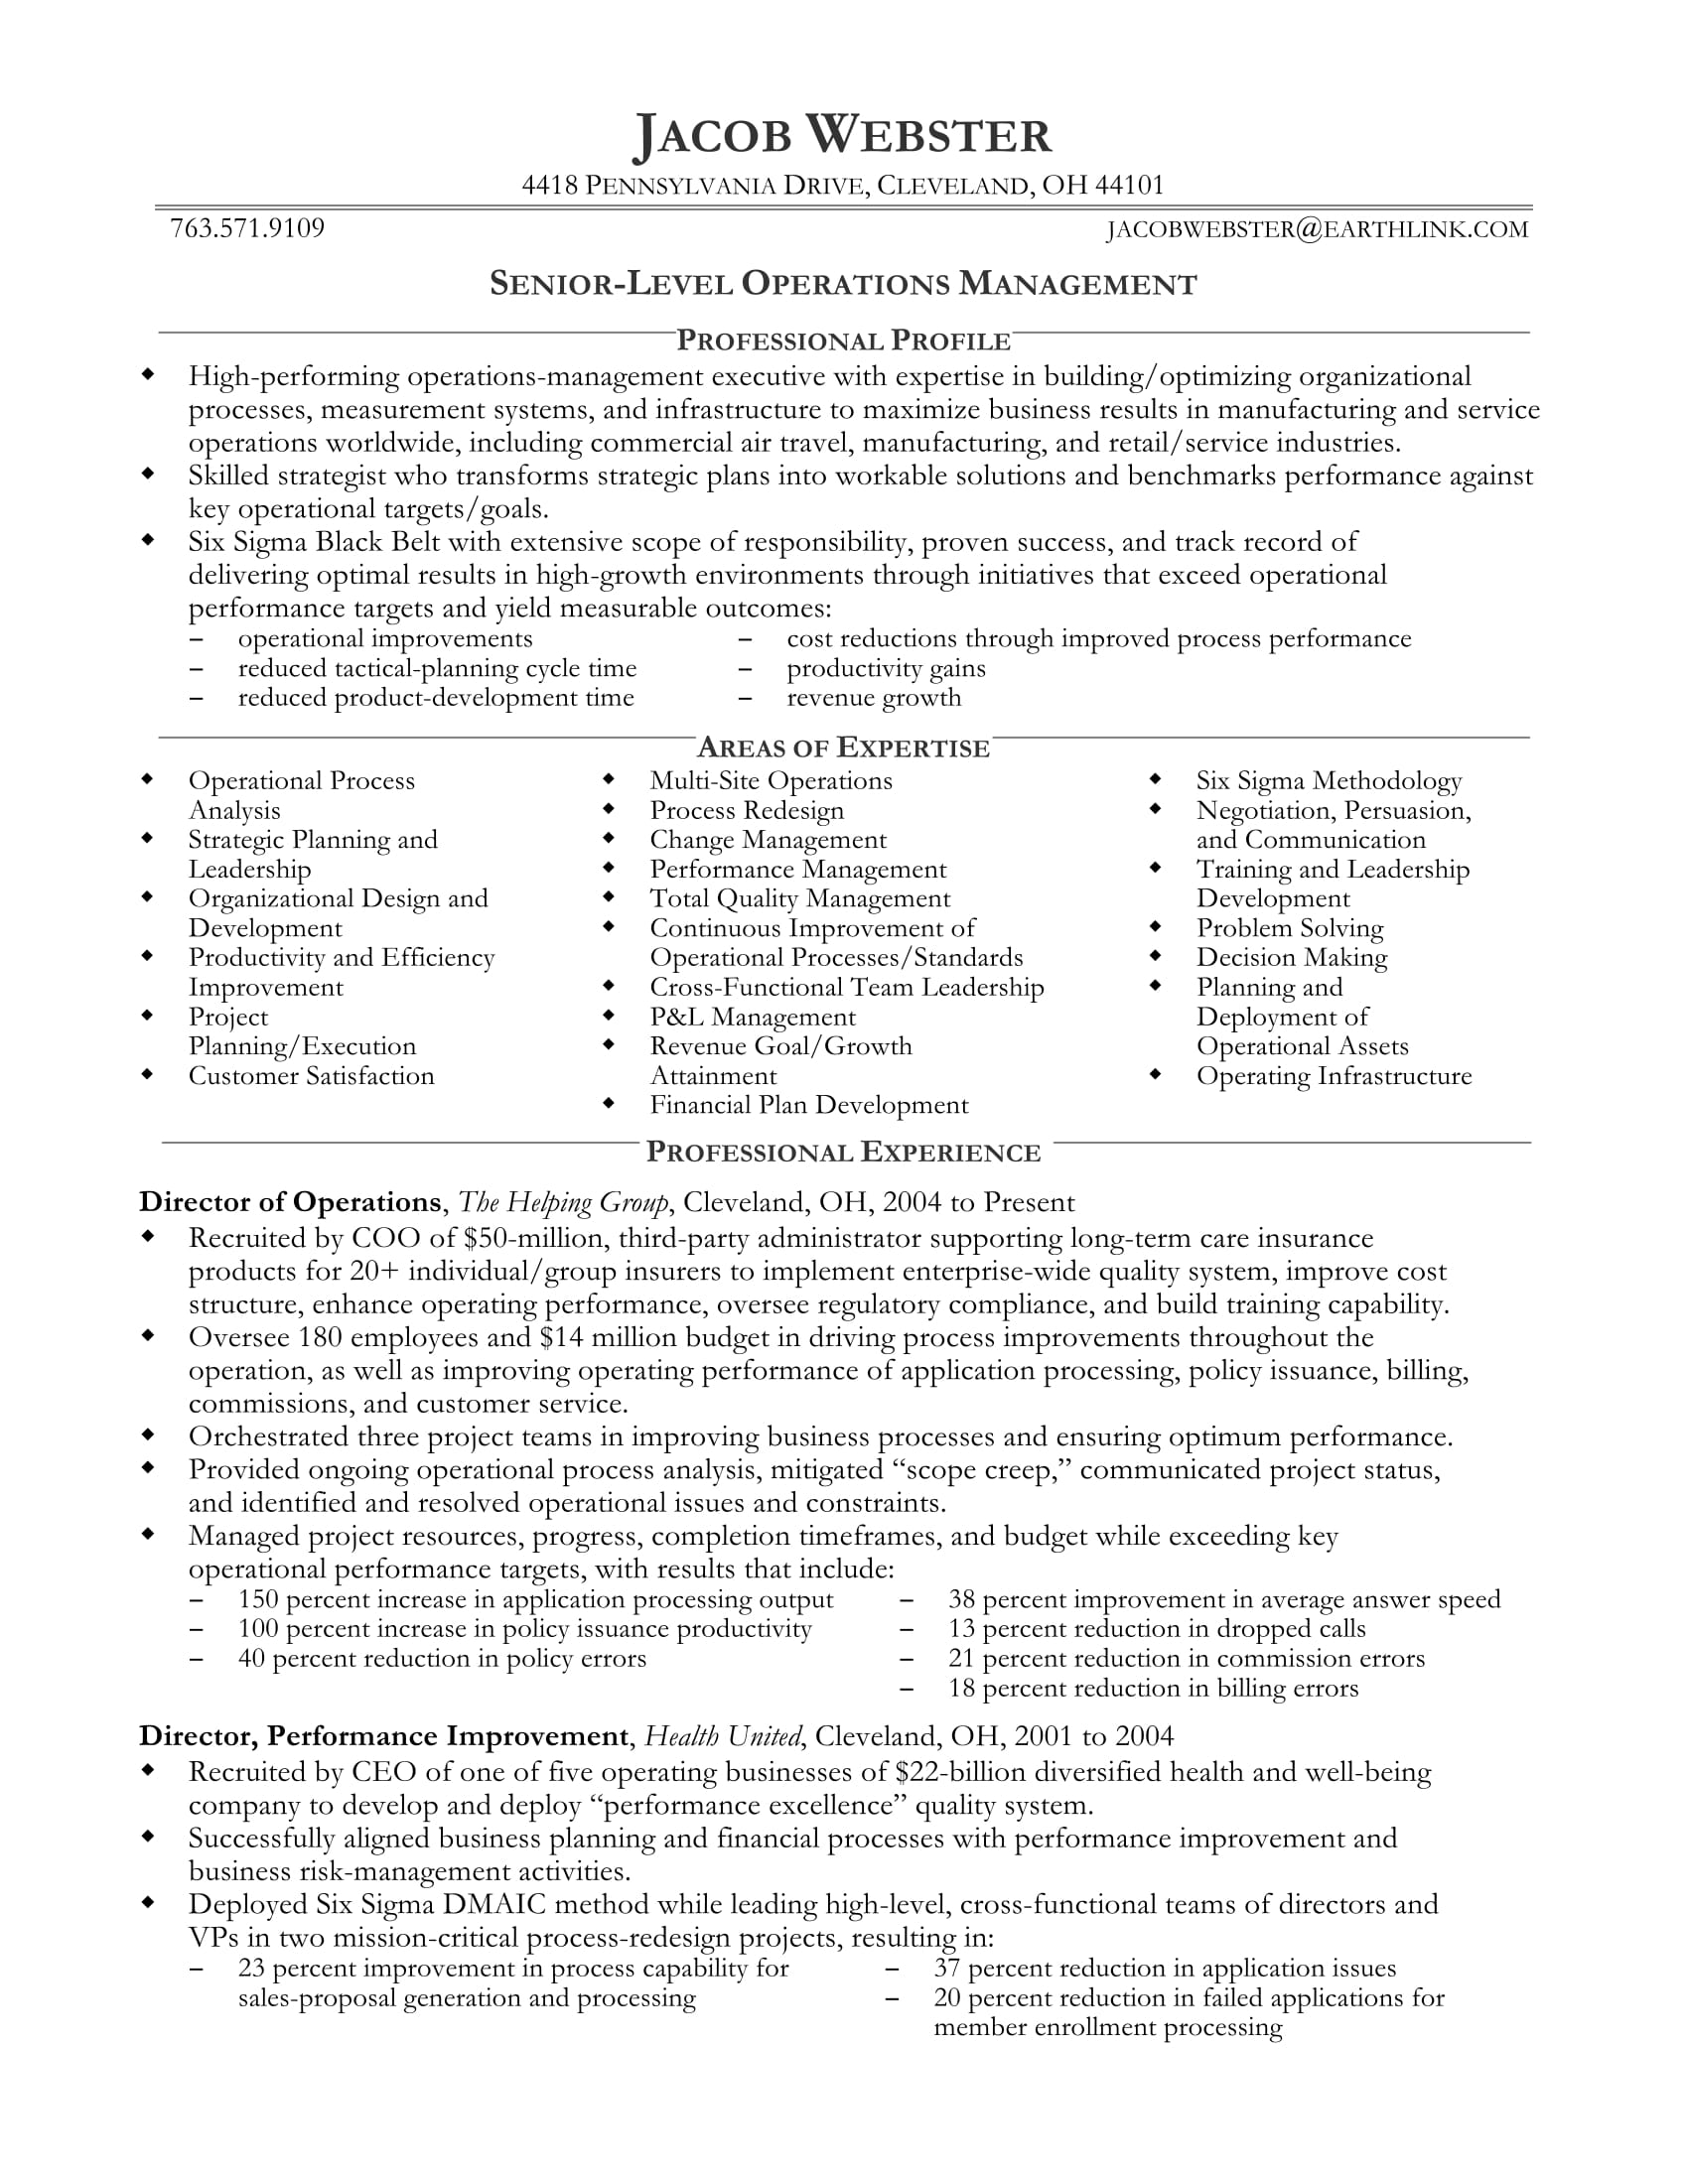 senior professional resume